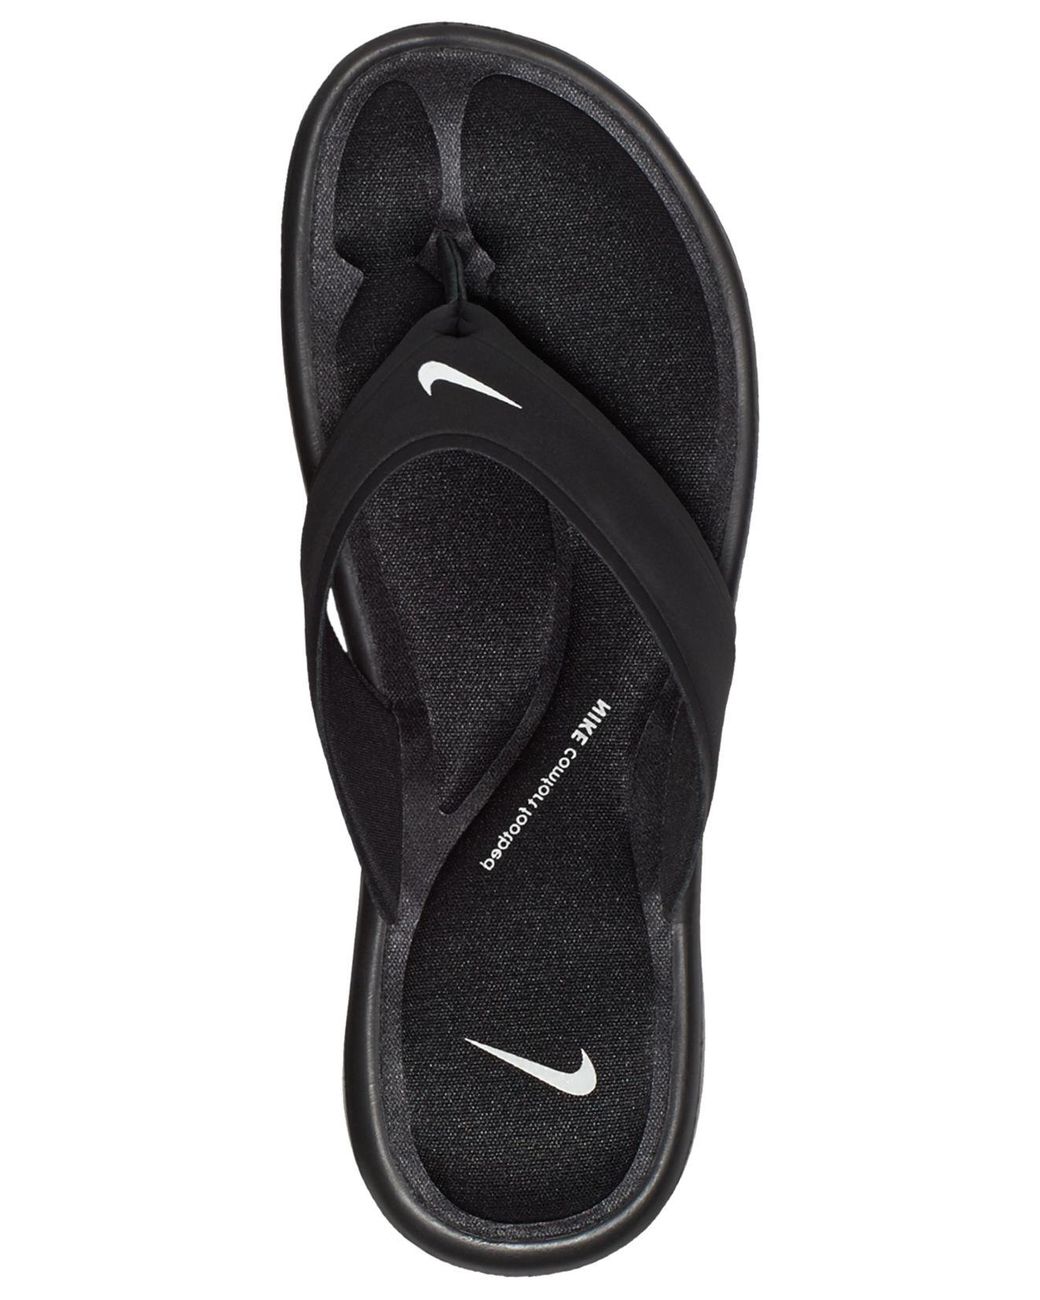 NIKE COMFORT FOOTBED Slides/Sandals/Flip Flops Women's Size 11 Black $20.00  - PicClick